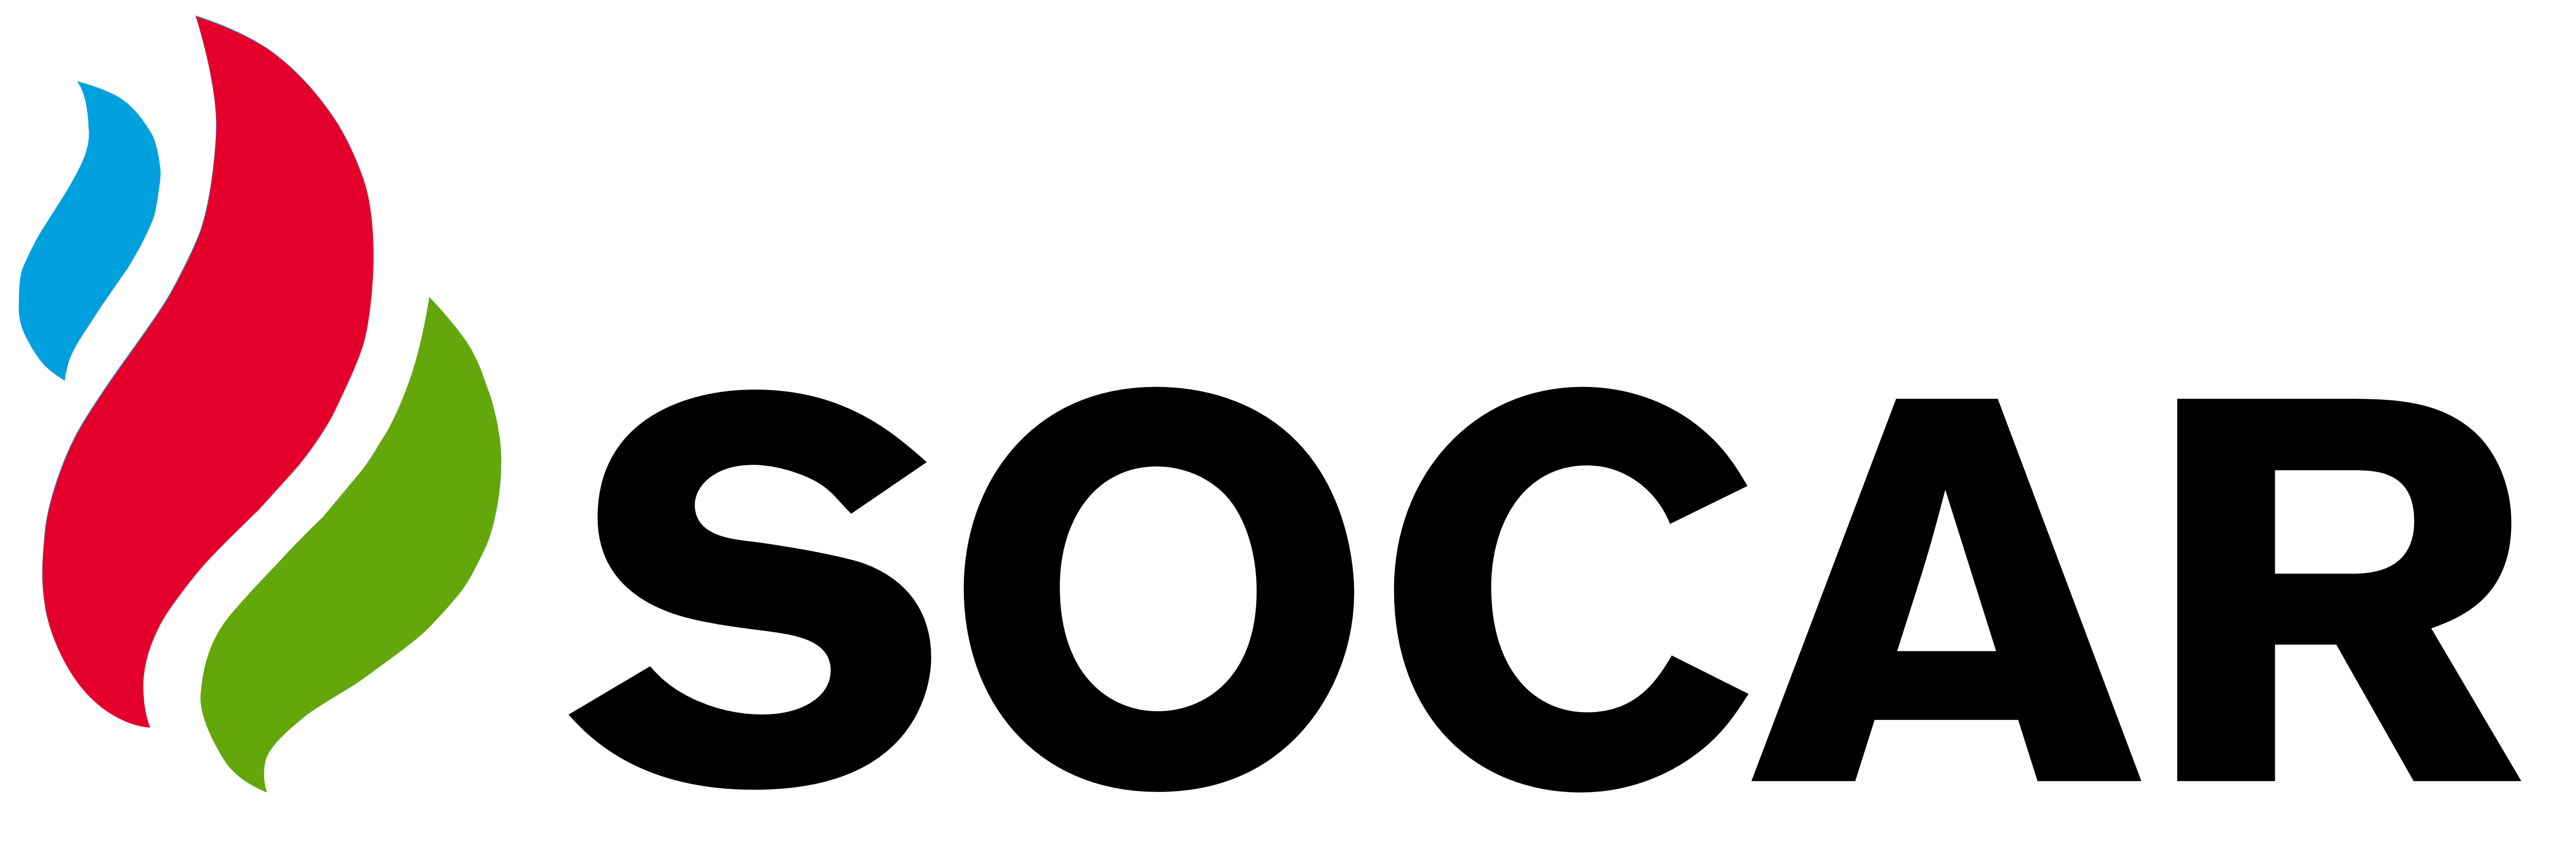 Socar Logo PNG